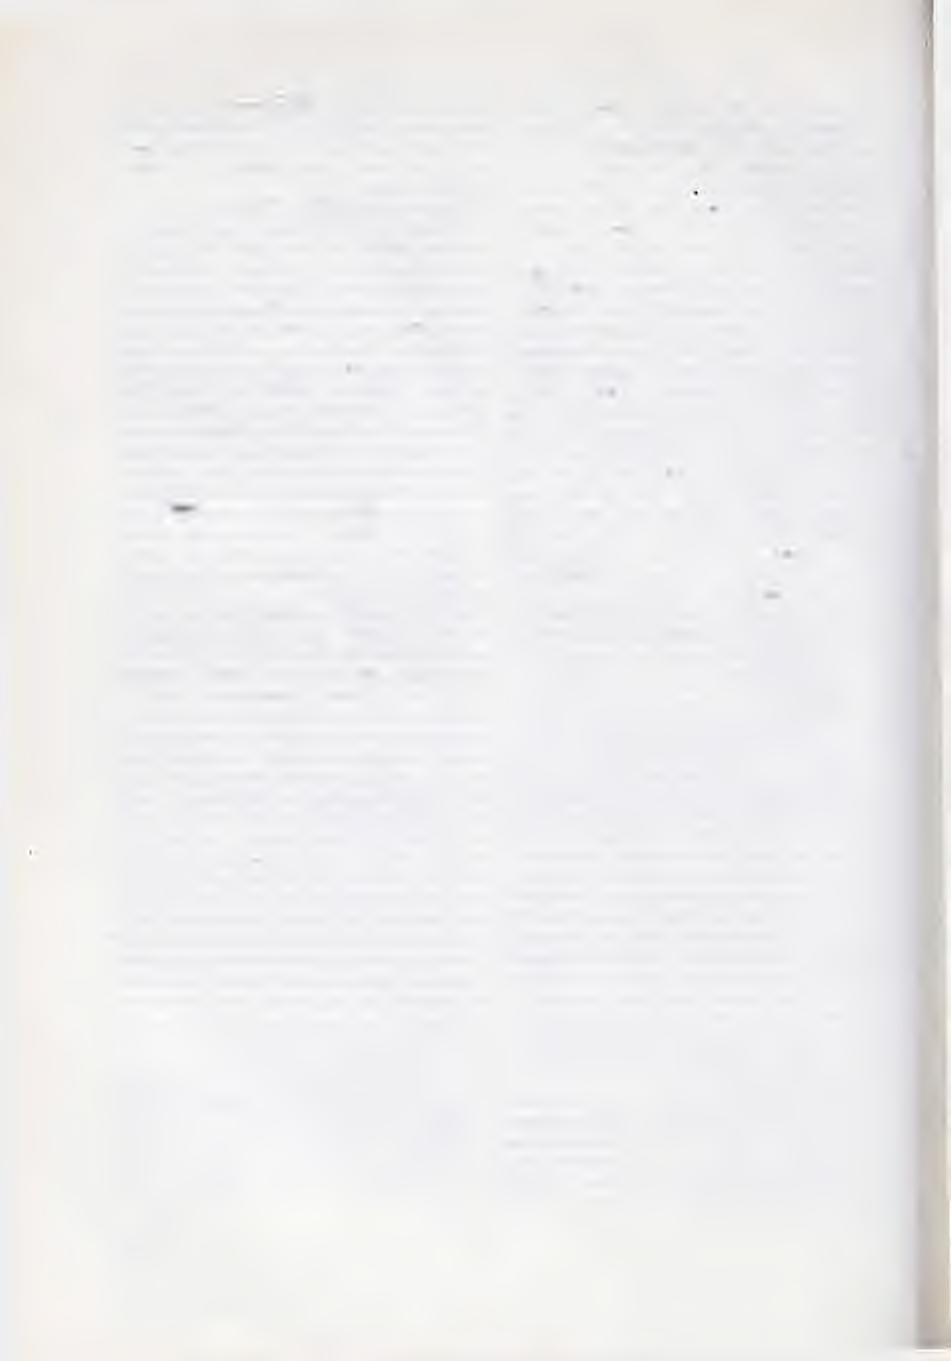 A. M ajew sk i : W E G E UND Z IE L E IN D ER FR Ü H ER K EN N U N G DES G EBÄR M UTTERHALSKREBSES. V EB Gustav Fischer Verlag, Jena, 1956. 85 strana s 18 slika.